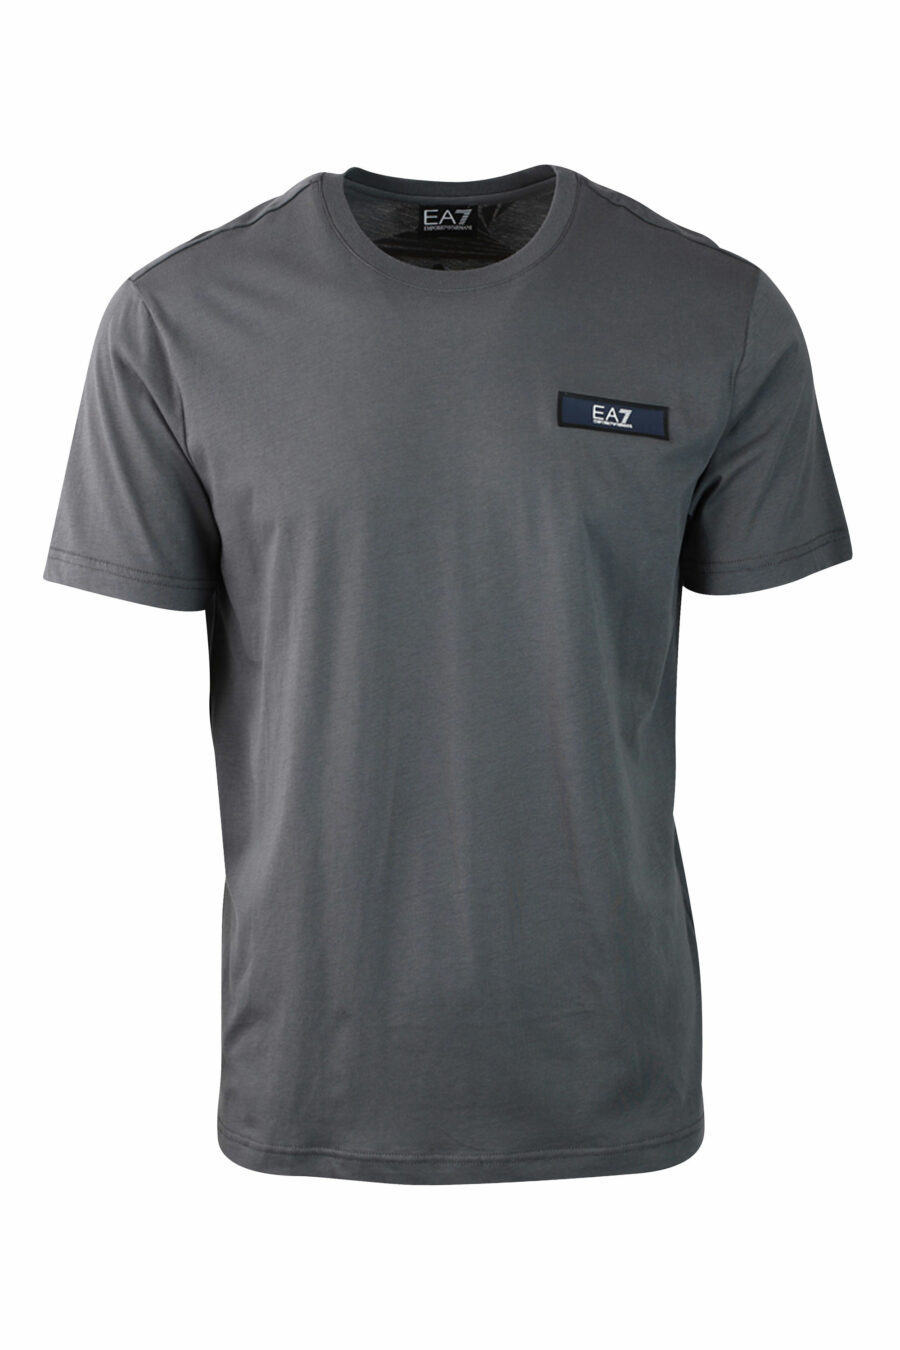 Graues T-Shirt mit Mini-Logo auf rechteckigem Aufnäher - IMG 0107